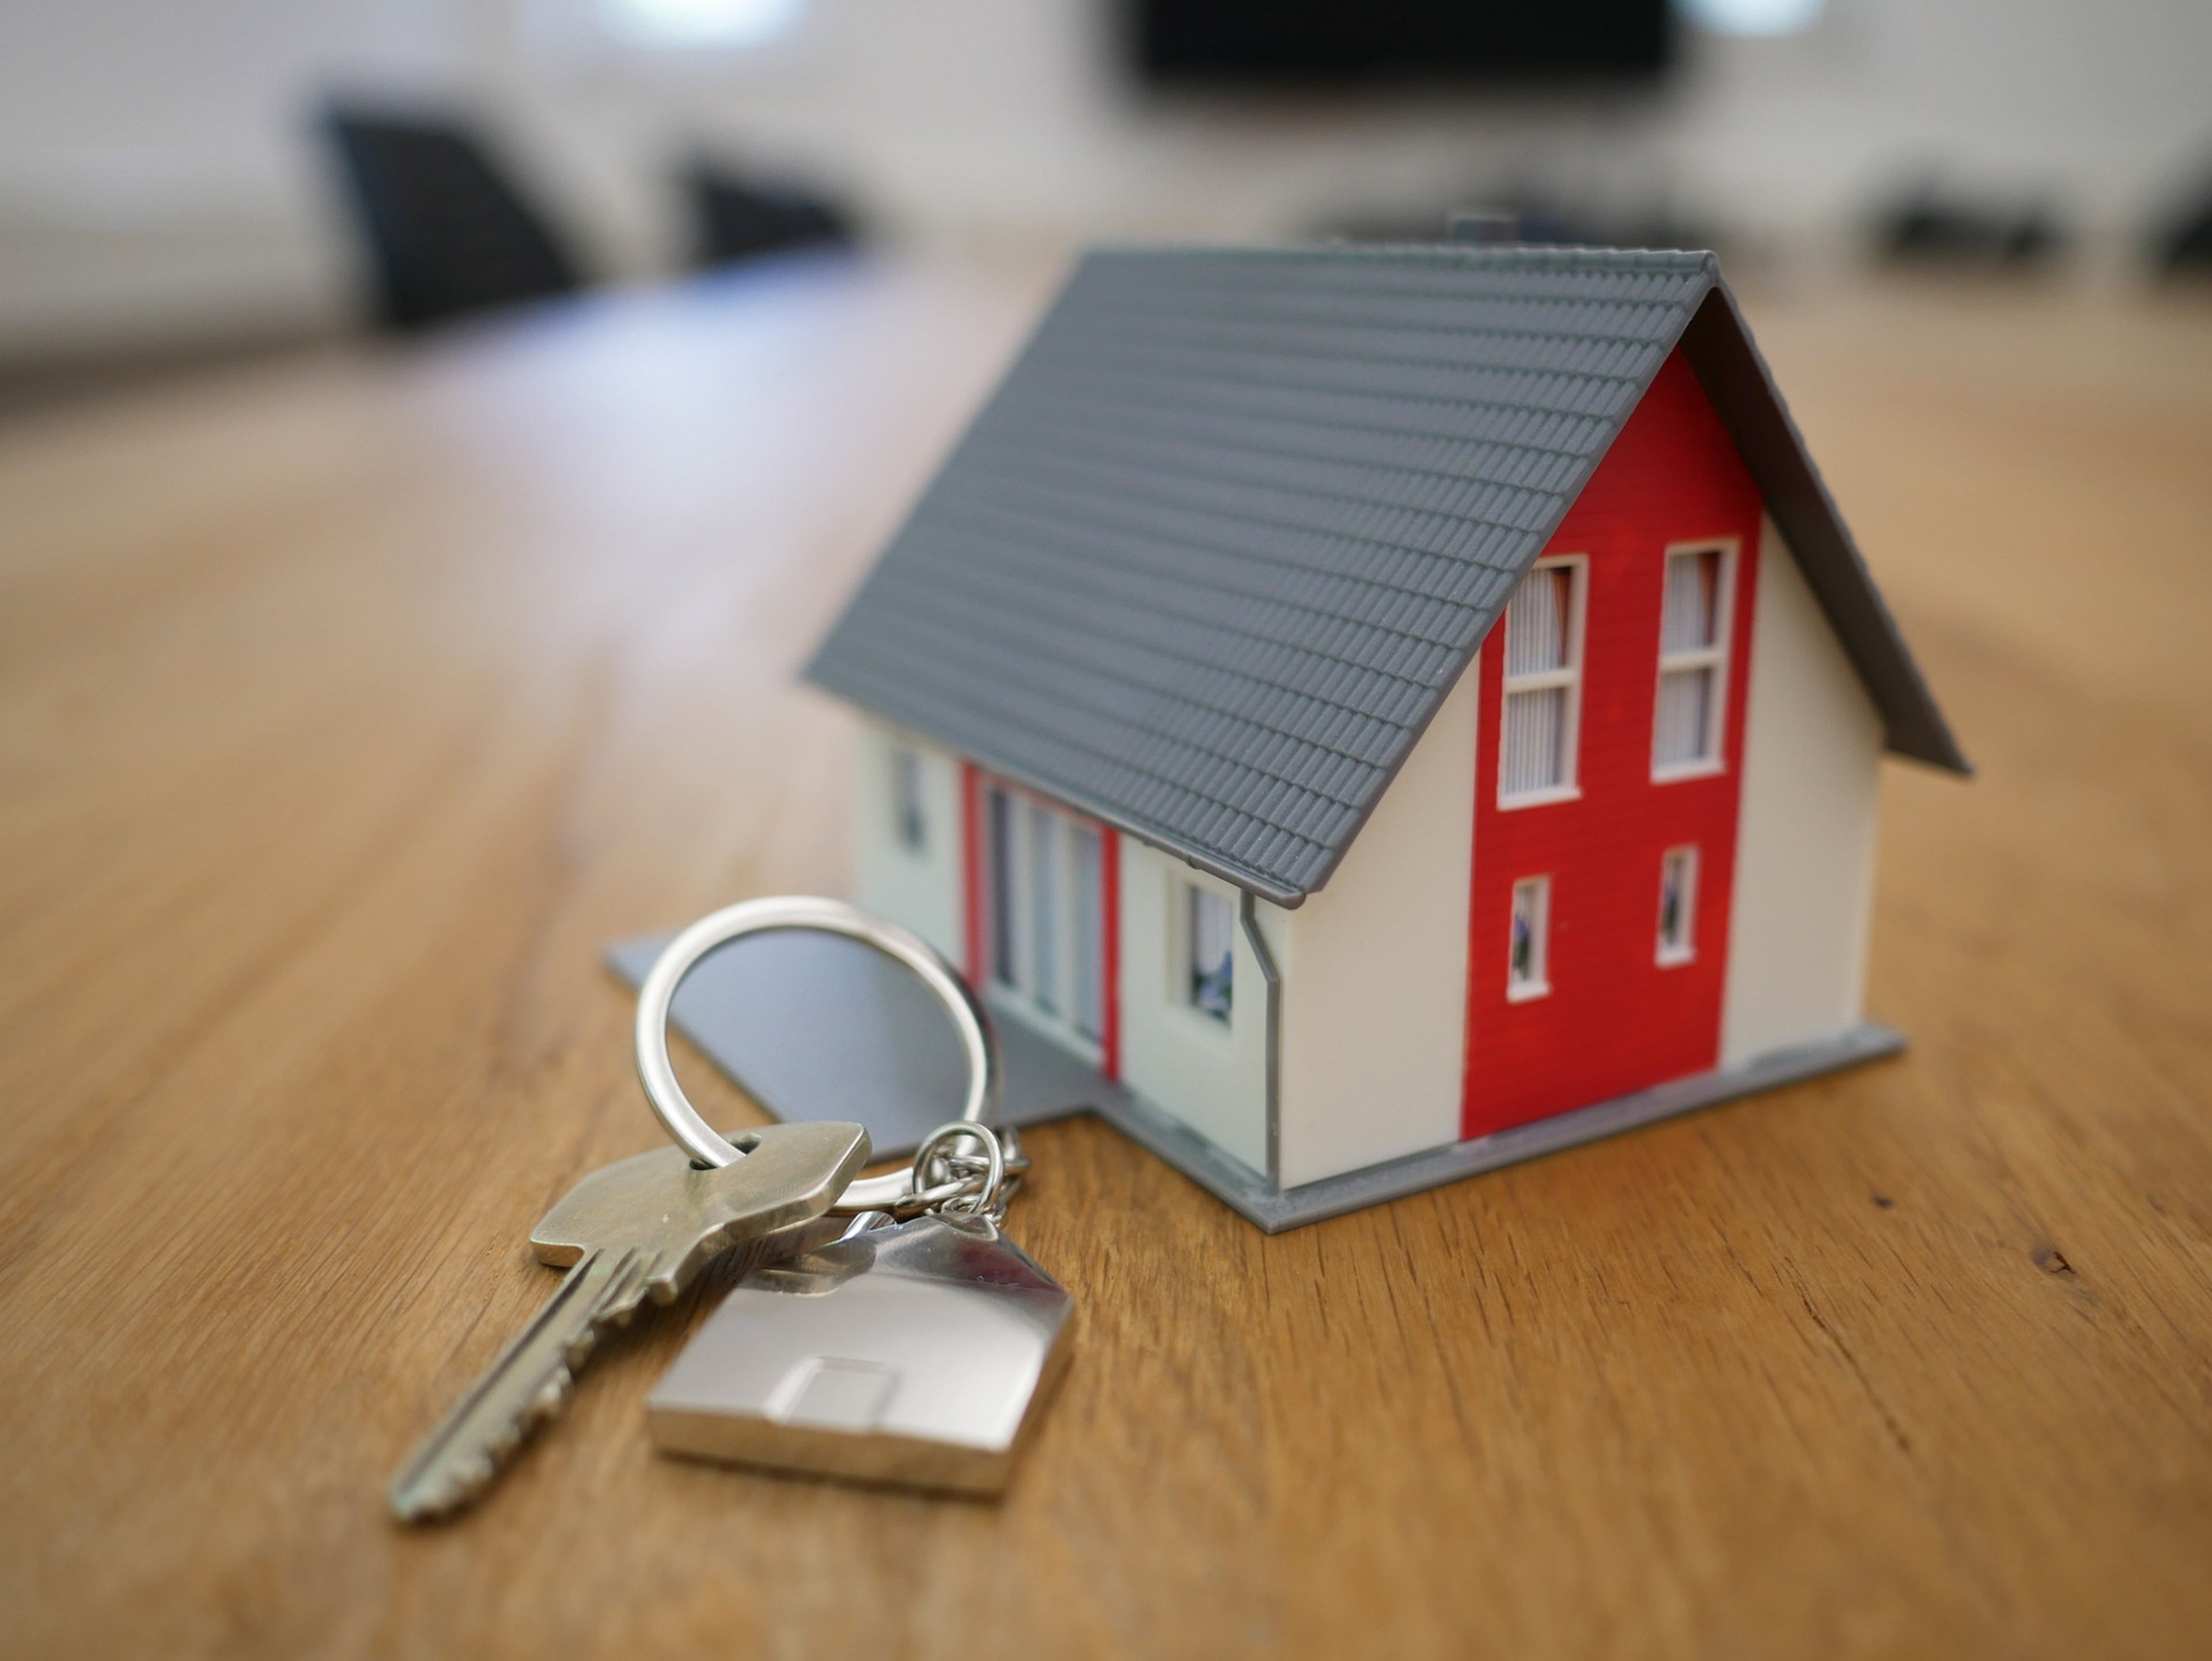 Una casa en miniatura junto a unas llaves.